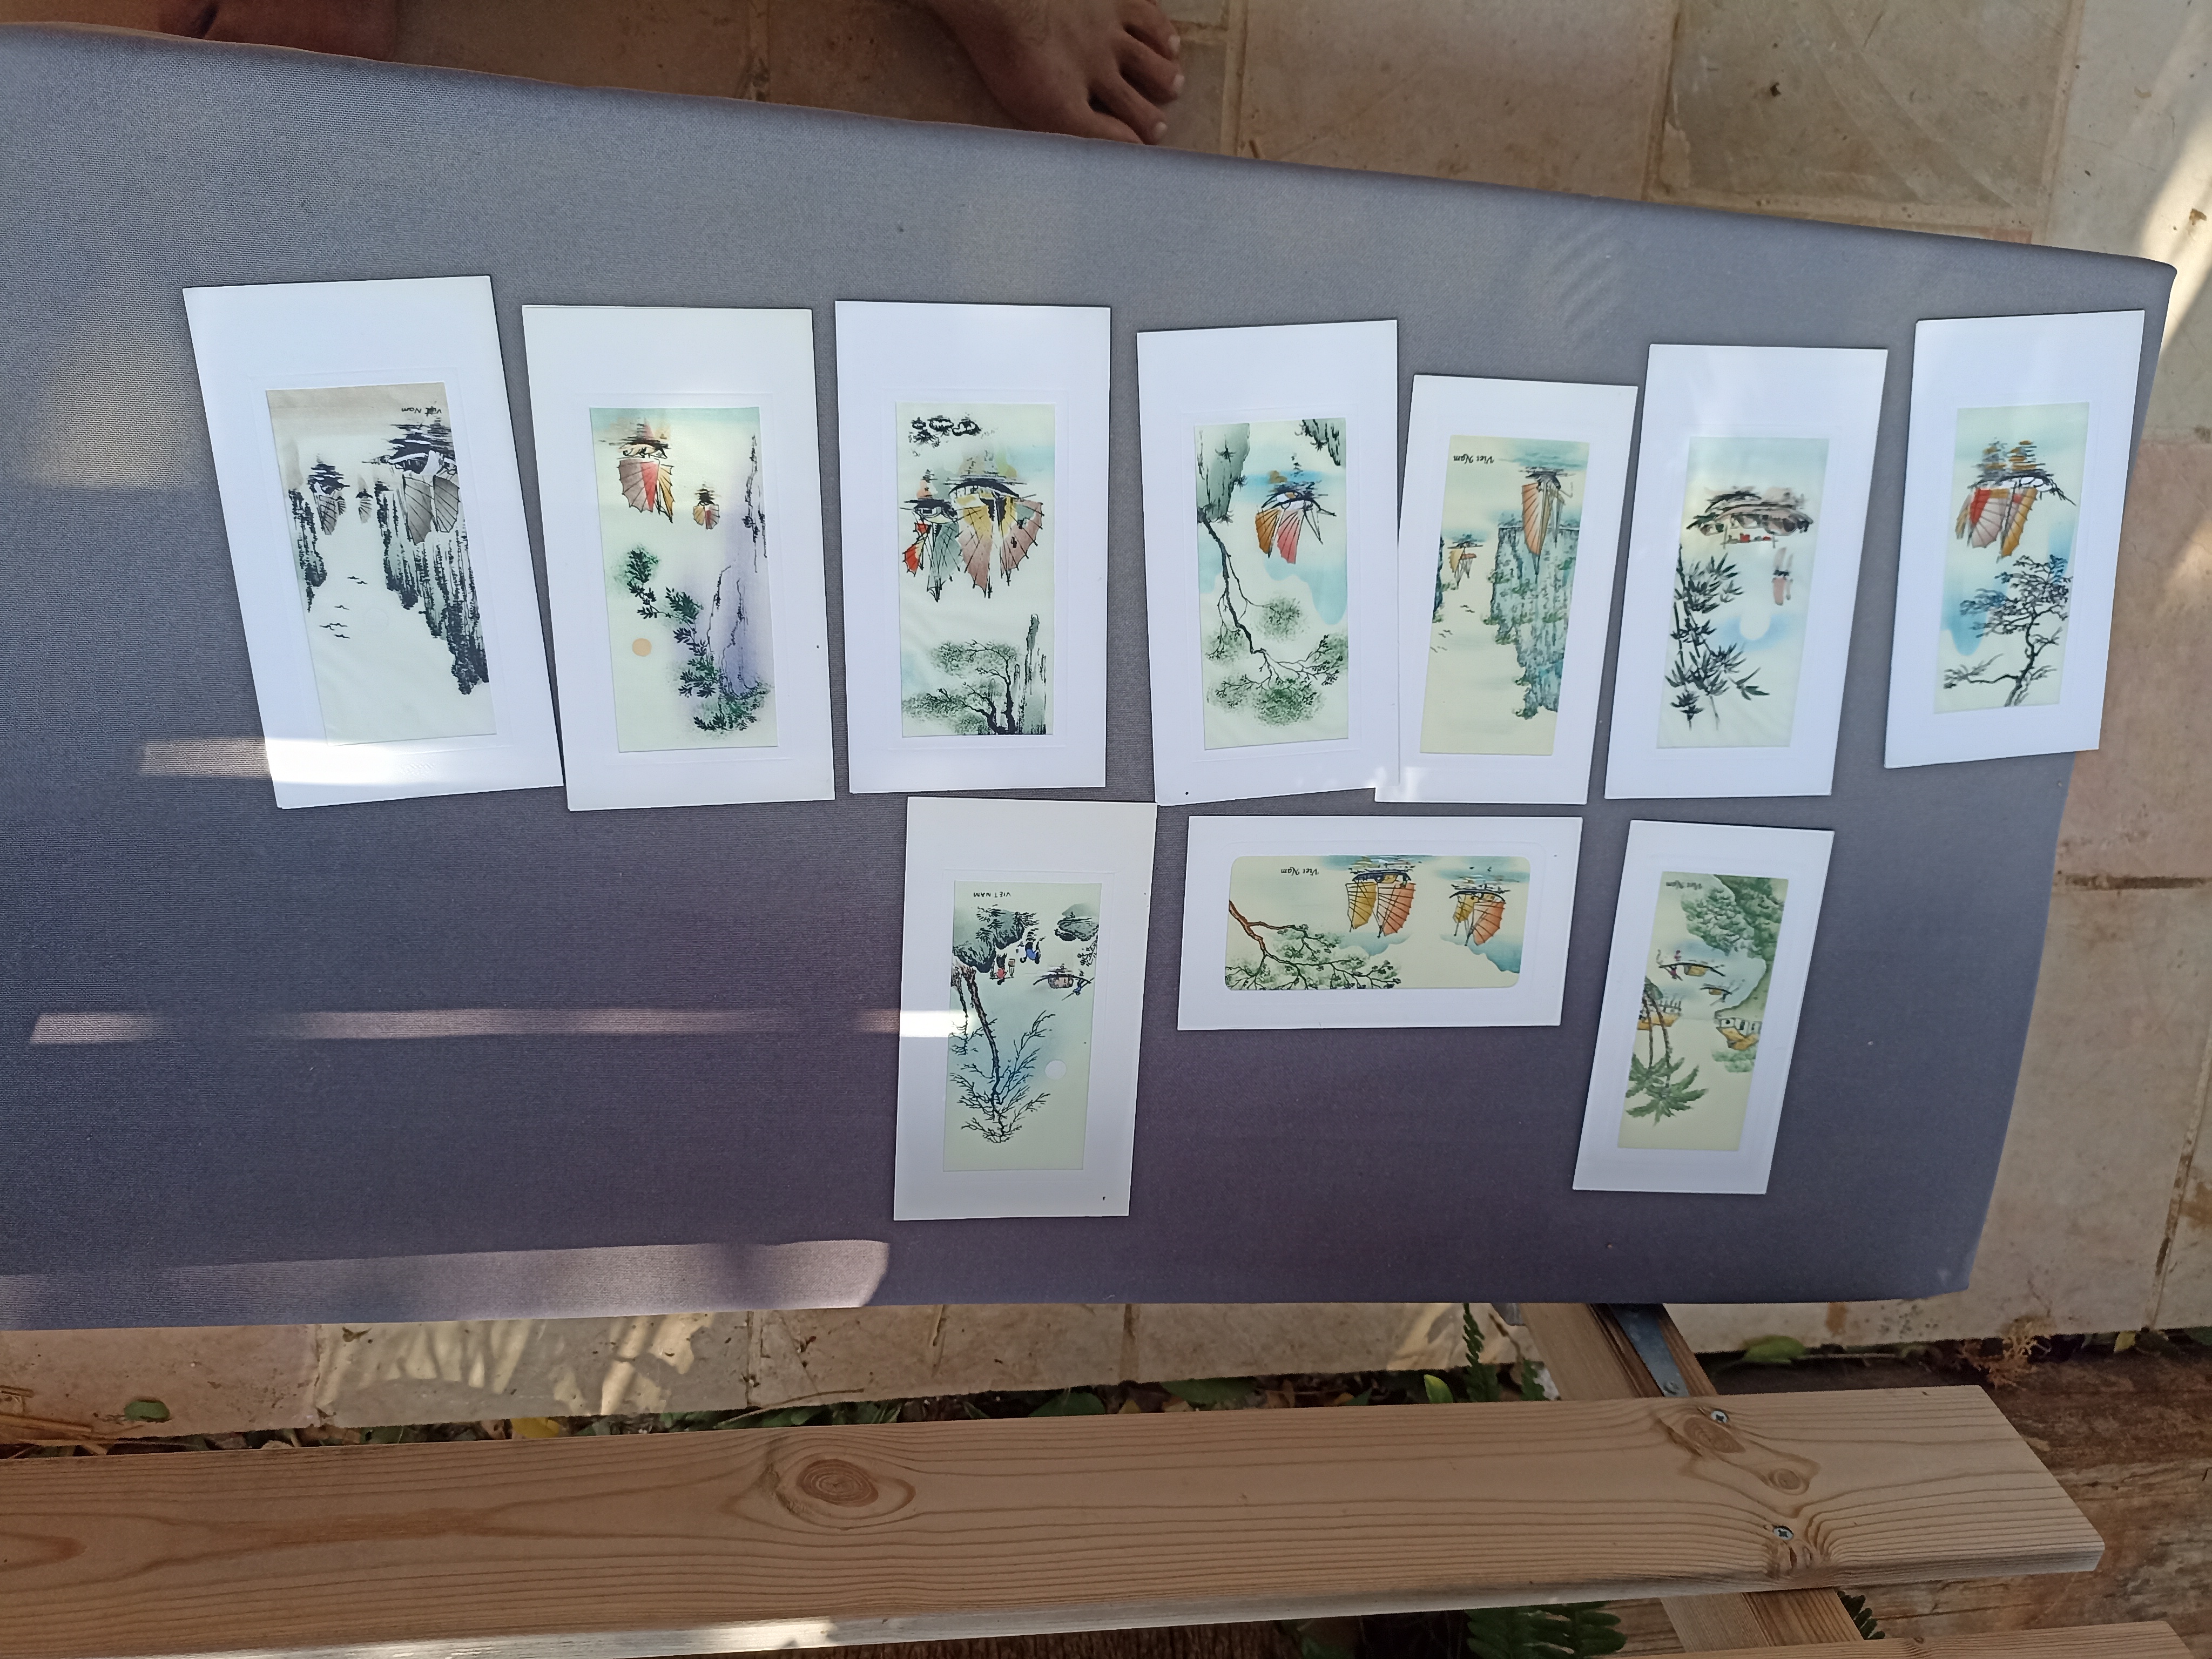 תמונה 3 ,תמונות מויטנאם מצוירות משי  למכירה בבית אריה אומנות  ציורים